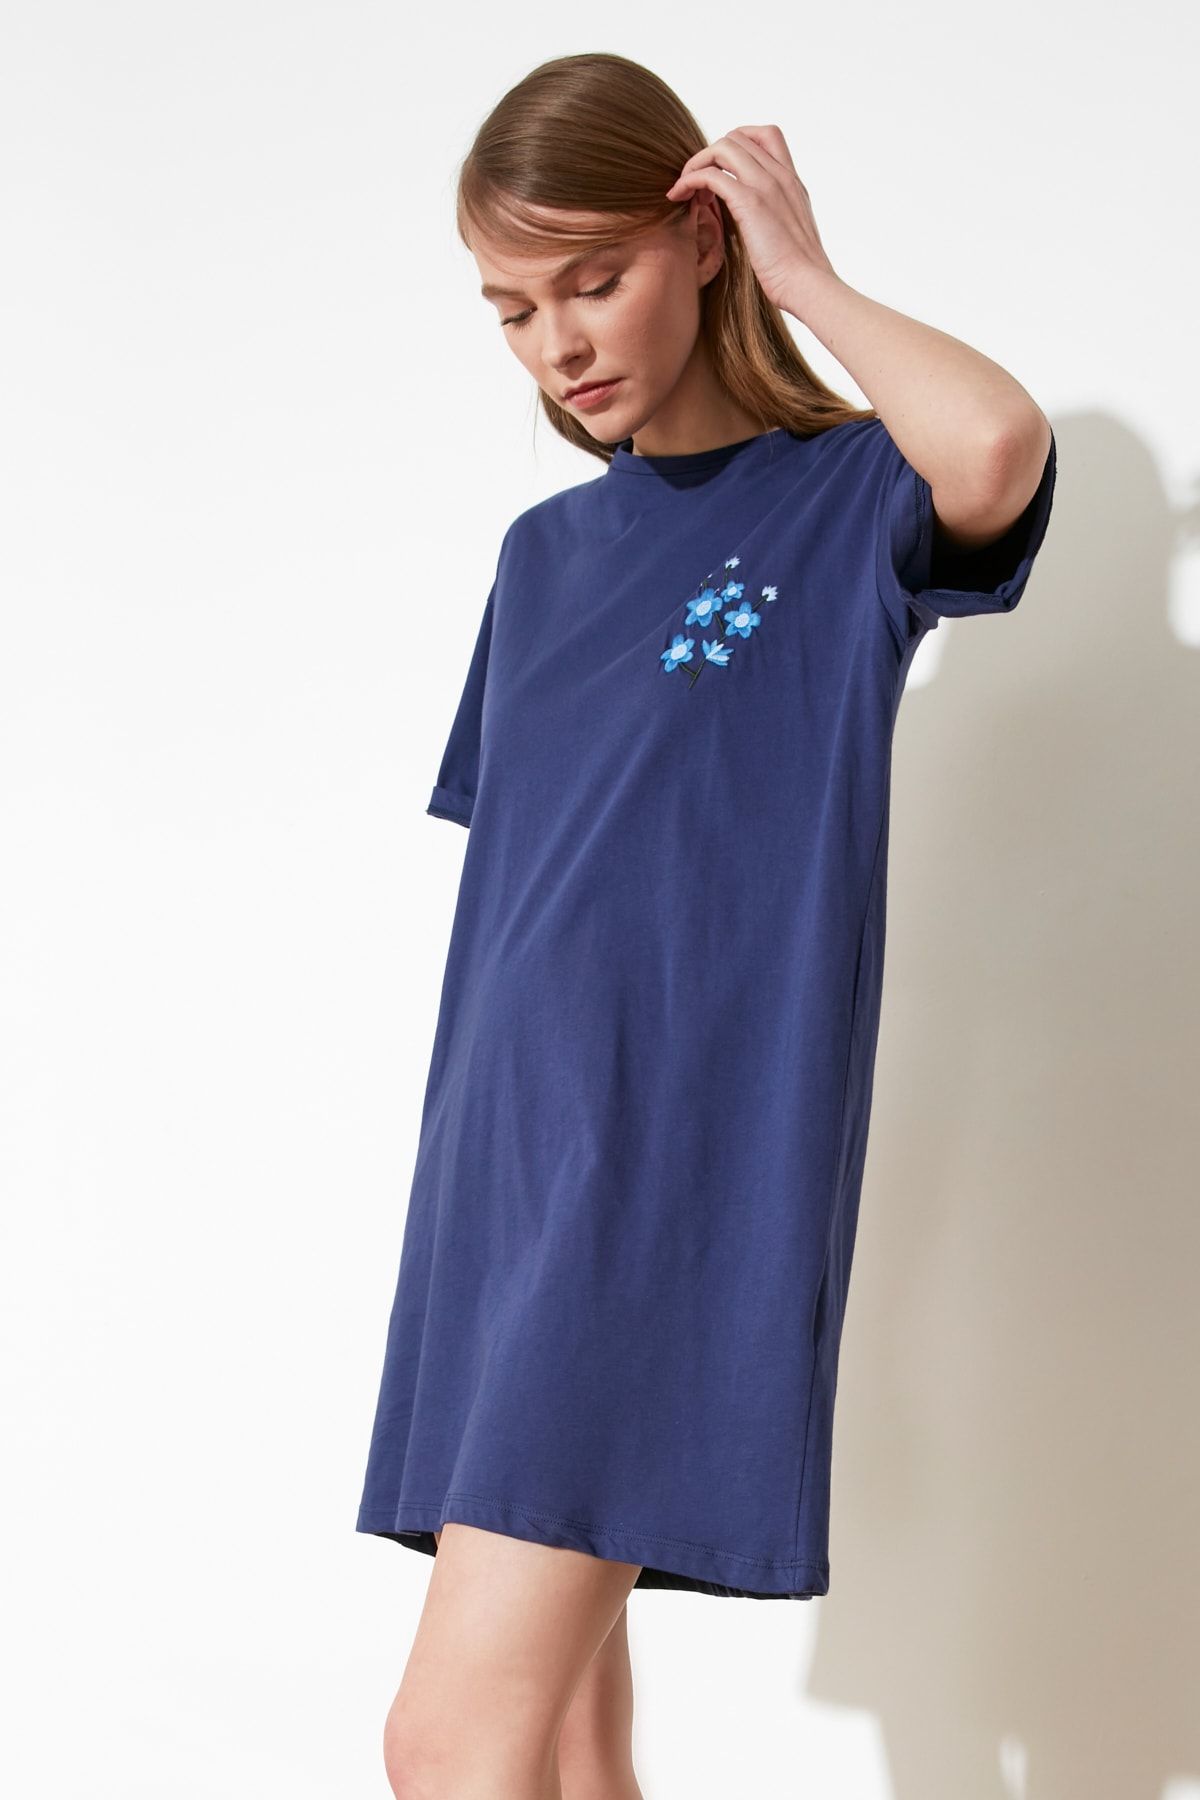 TRENDYOLMİLLA Lacivert Nakışlı Örme T-shirt Elbise TWOSS21EL1370